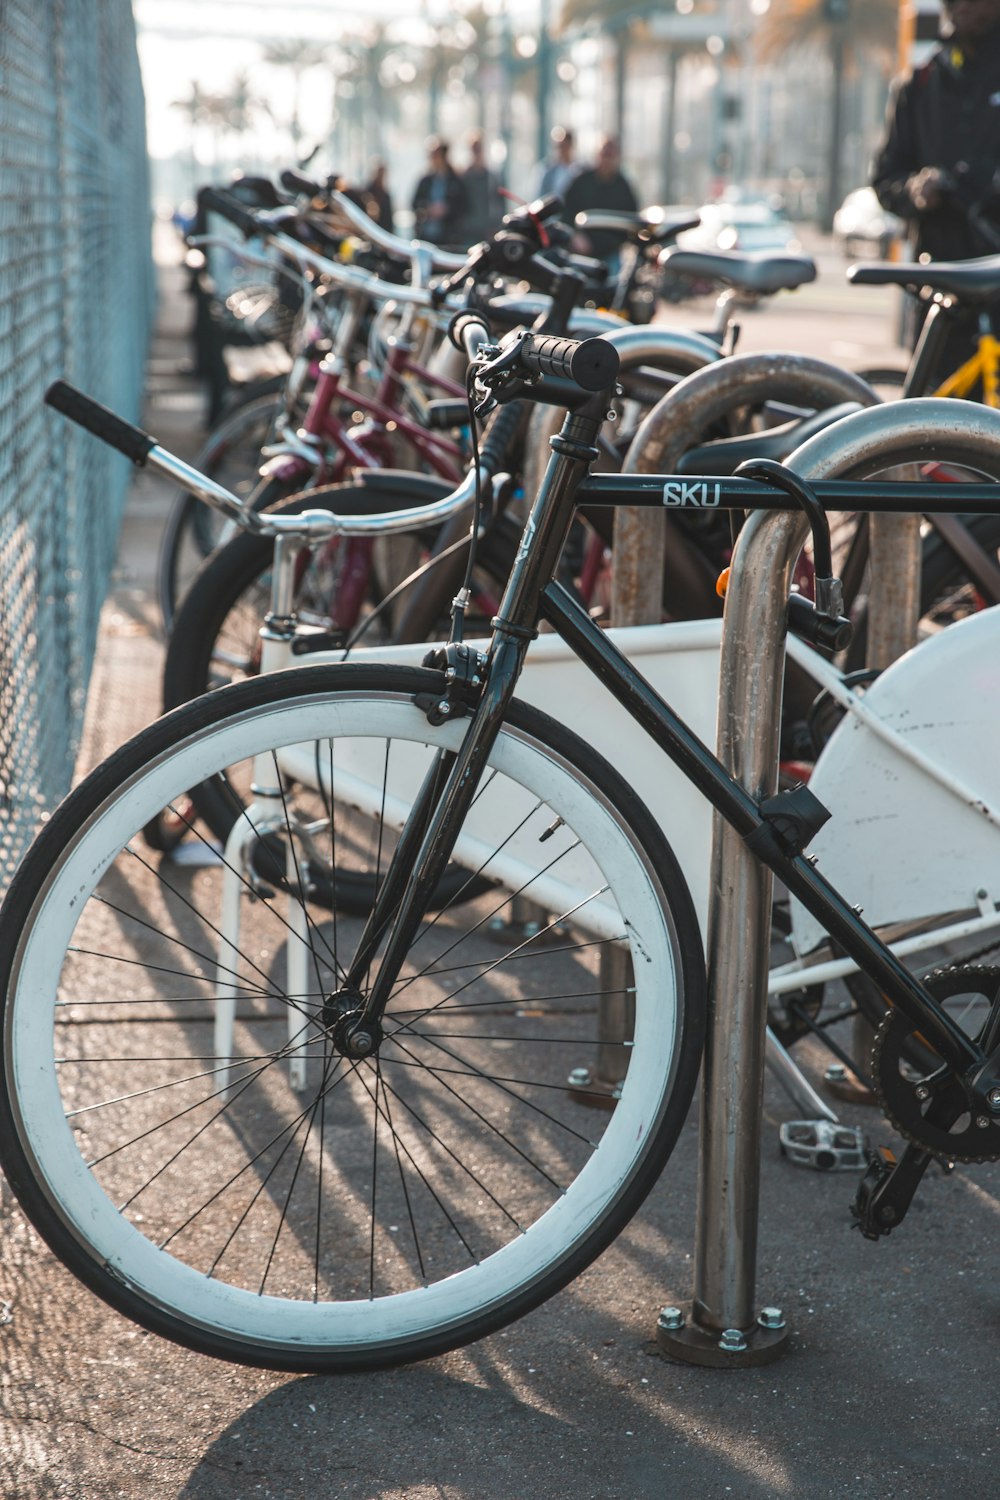 Bicicletas estacionadas cerca de una valla metálica gris